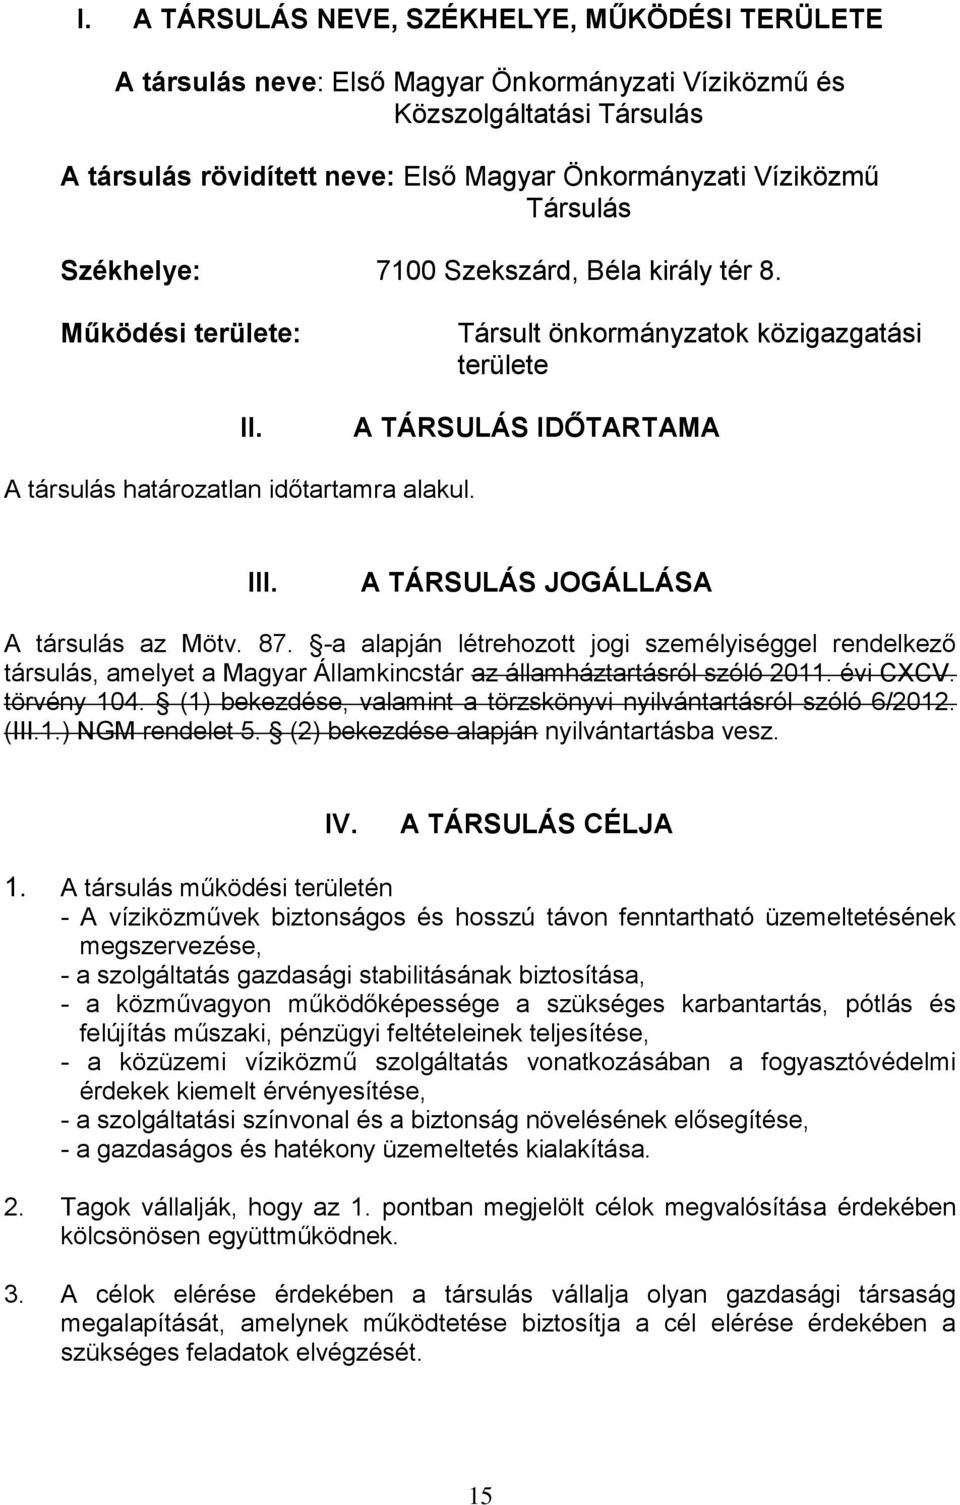 A TÁRSULÁS JOGÁLLÁSA A társulás az Mötv. 87. -a alapján létrehozott jogi személyiséggel rendelkező társulás, amelyet a Magyar Államkincstár az államháztartásról szóló 2011. évi CXCV. törvény 104.